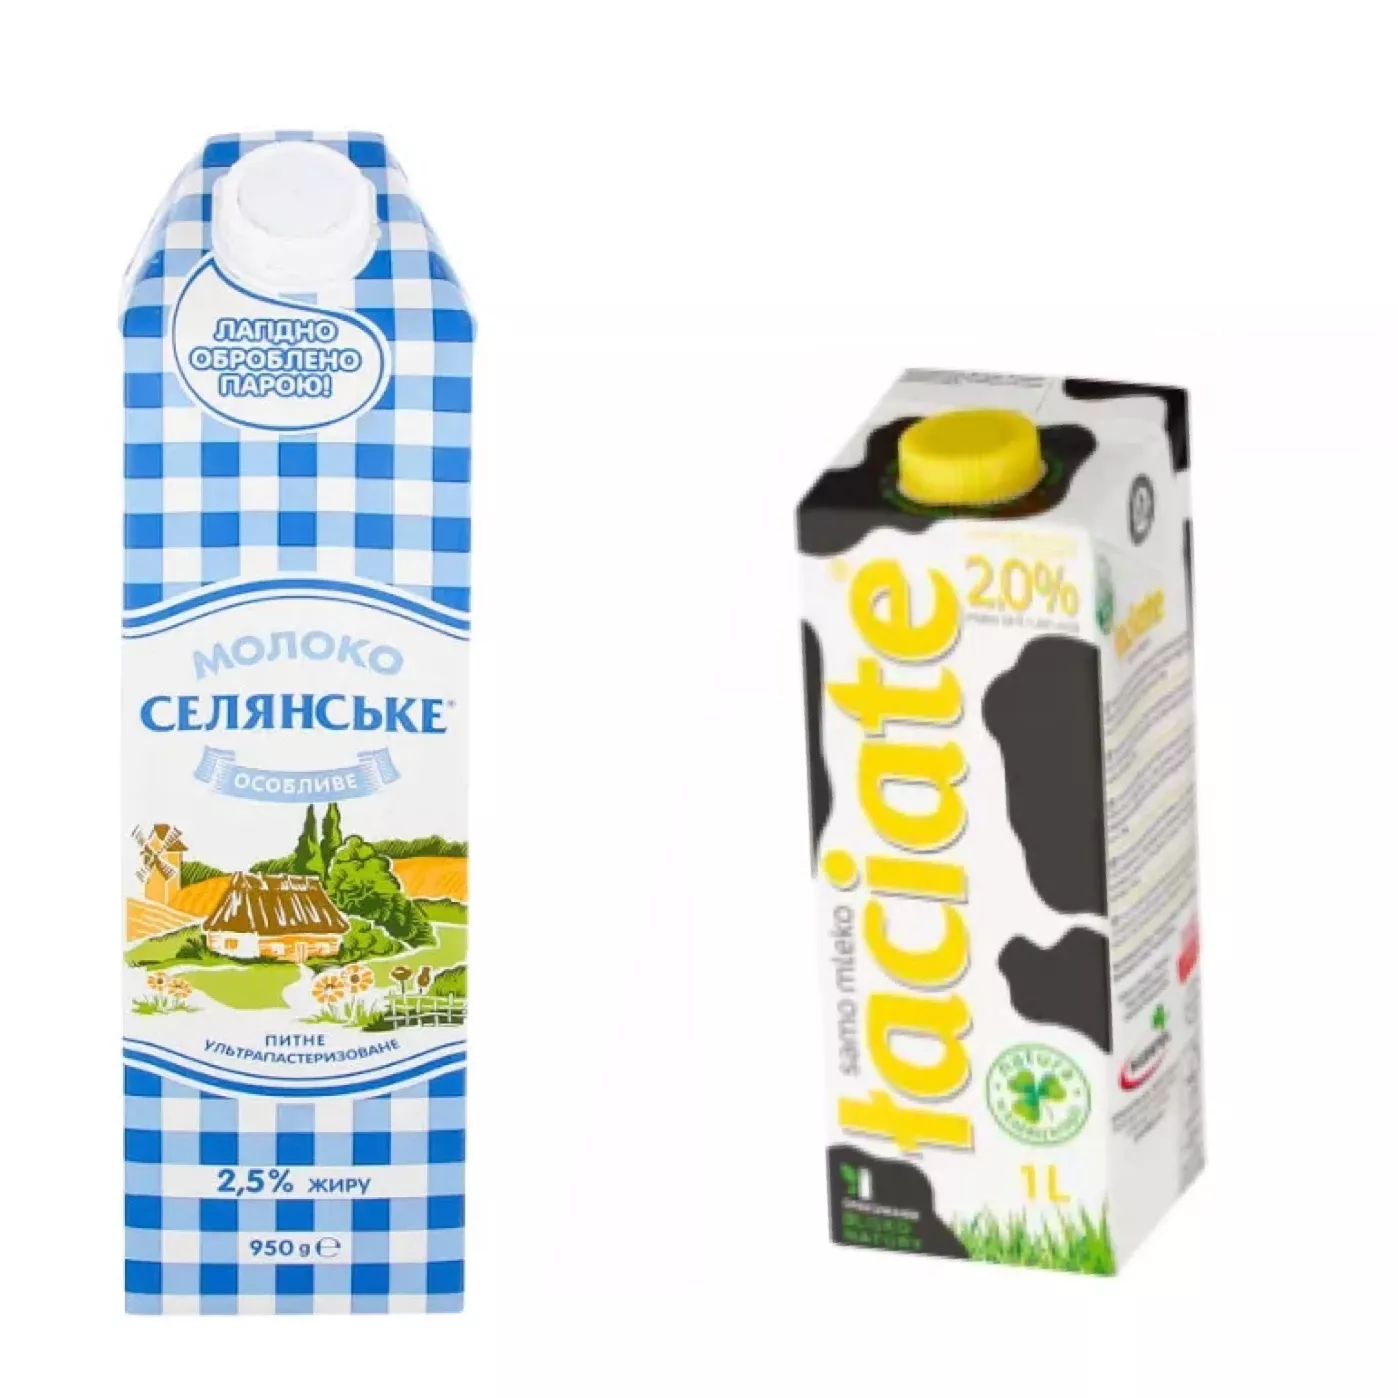 Українське та польське молоко